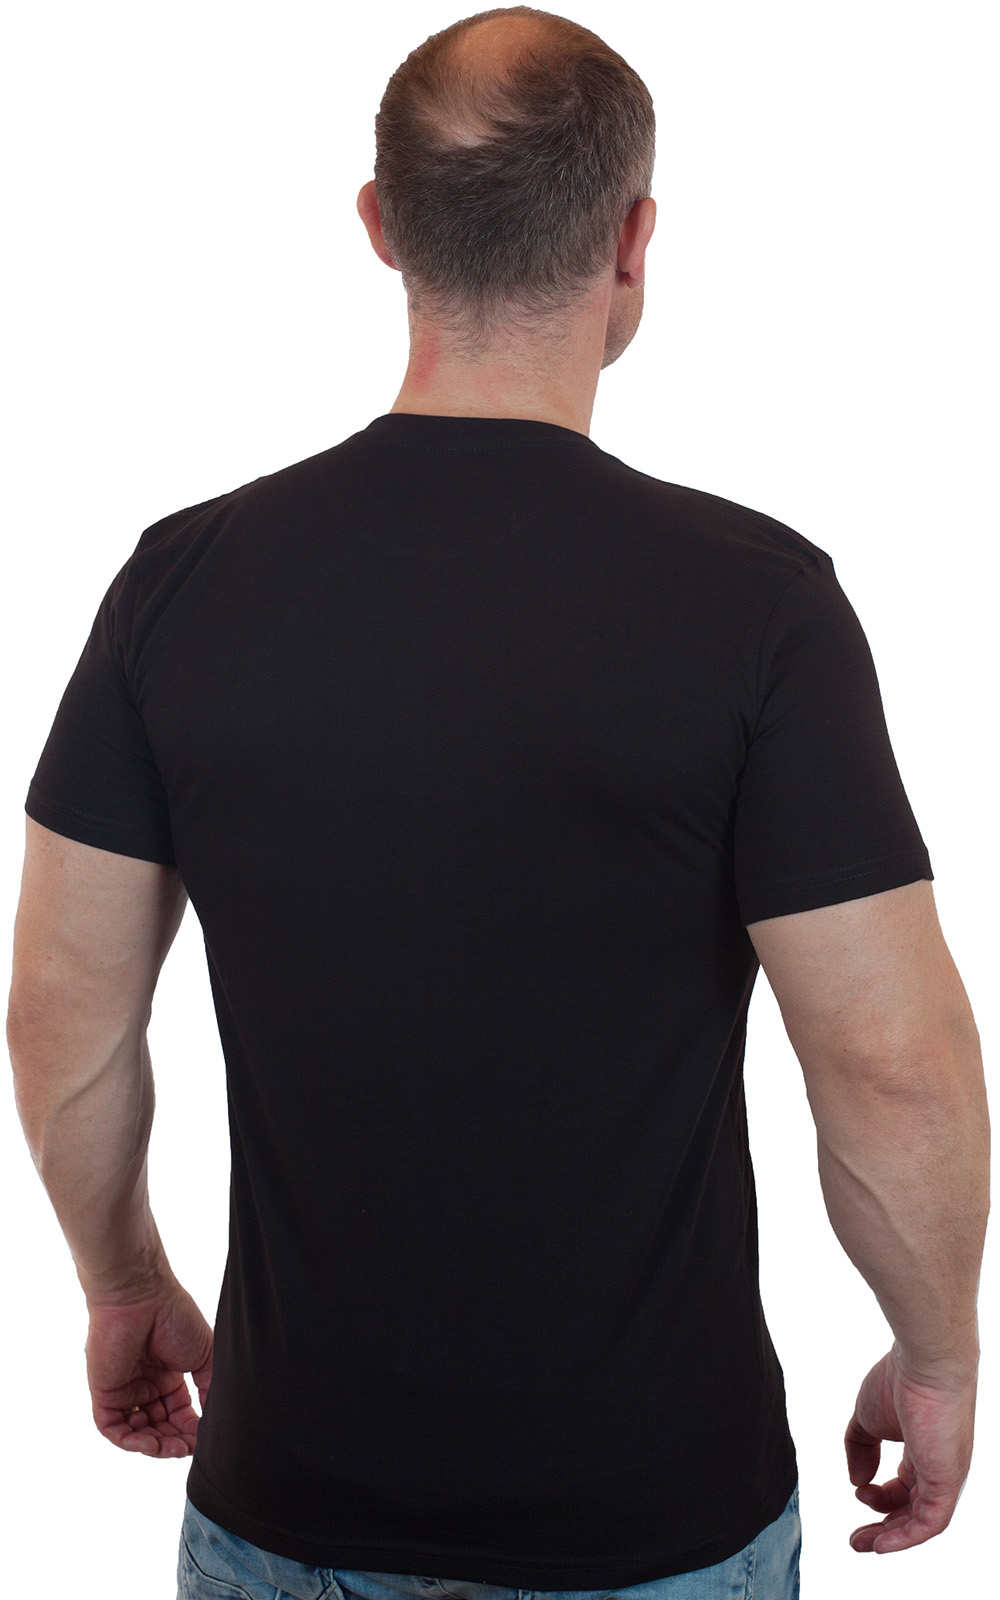 Чёрная футболка с термопринтом ВДВ 